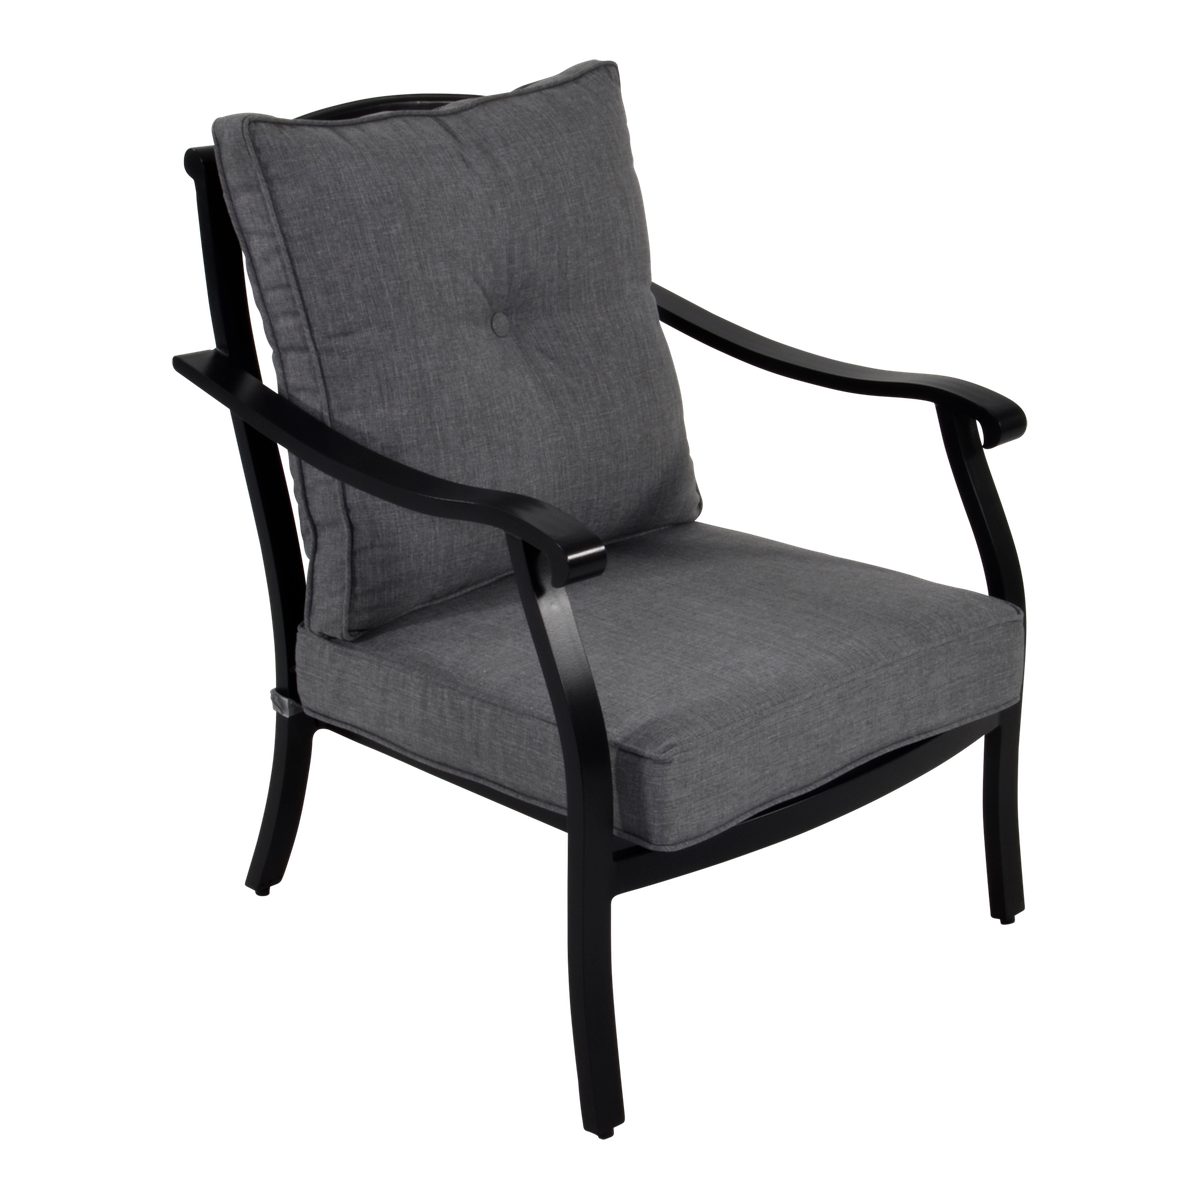 Lesli Living Gartenstuhl 2er Set Loungestuhl Gartenstuhl Sessel Queens Aluminium schwarz 73x89x95cm hochwertig | Stühle